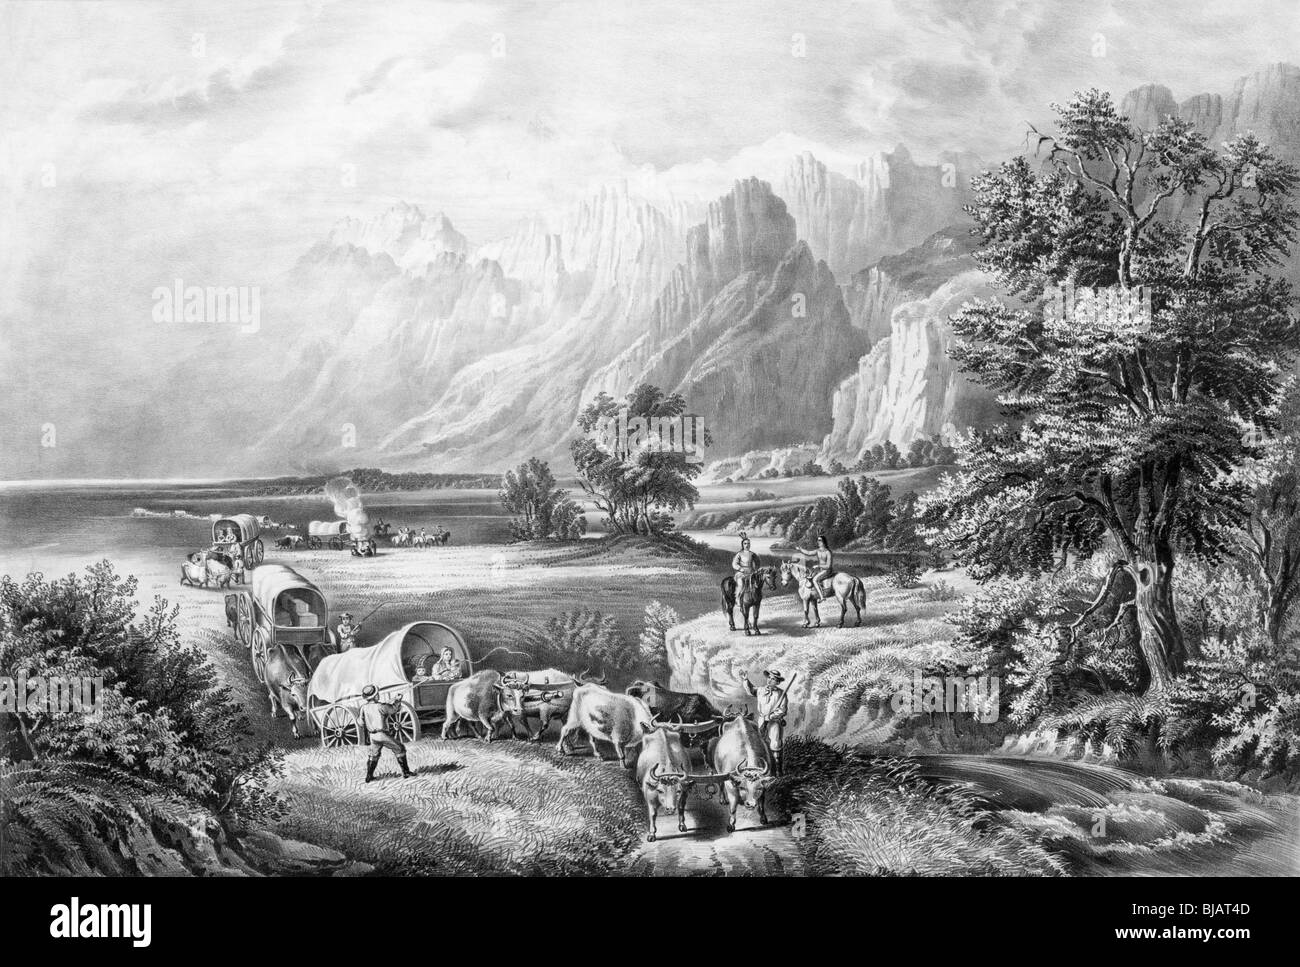 Lithographie en noir et blanc vers 1866 intitulée "Les Montagnes Rocheuses - emigrants traversant les plaines. Banque D'Images